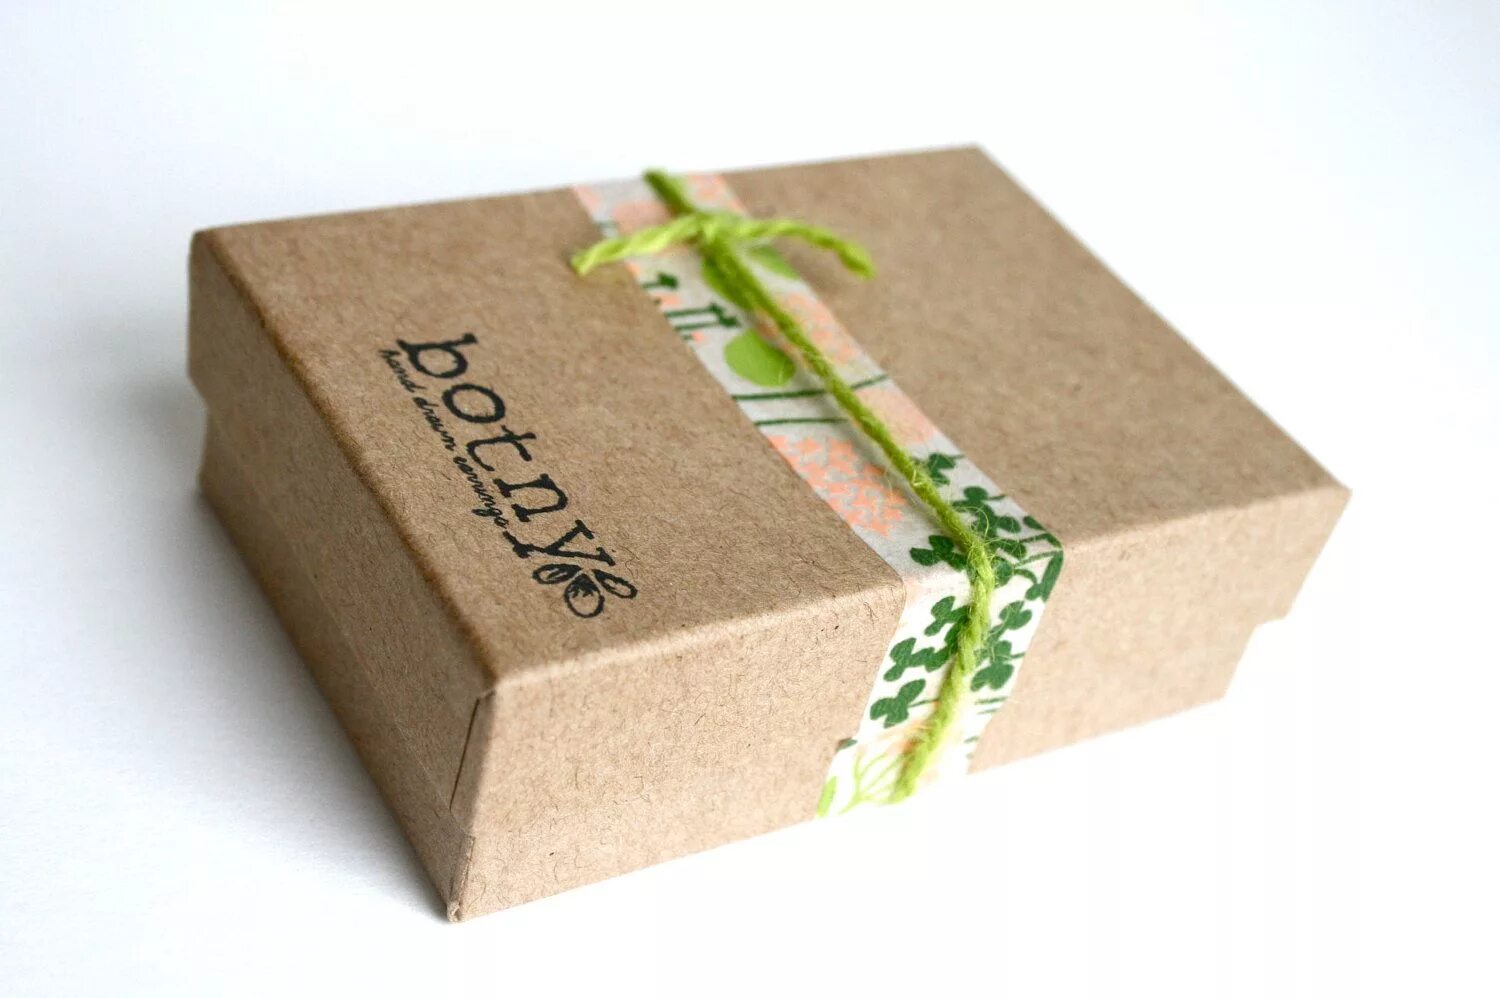 Купить бумажную упаковку. Эко упаковка. Дизайнерские коробки. Экологичная упаковка для продуктов. Упаковка коробки.